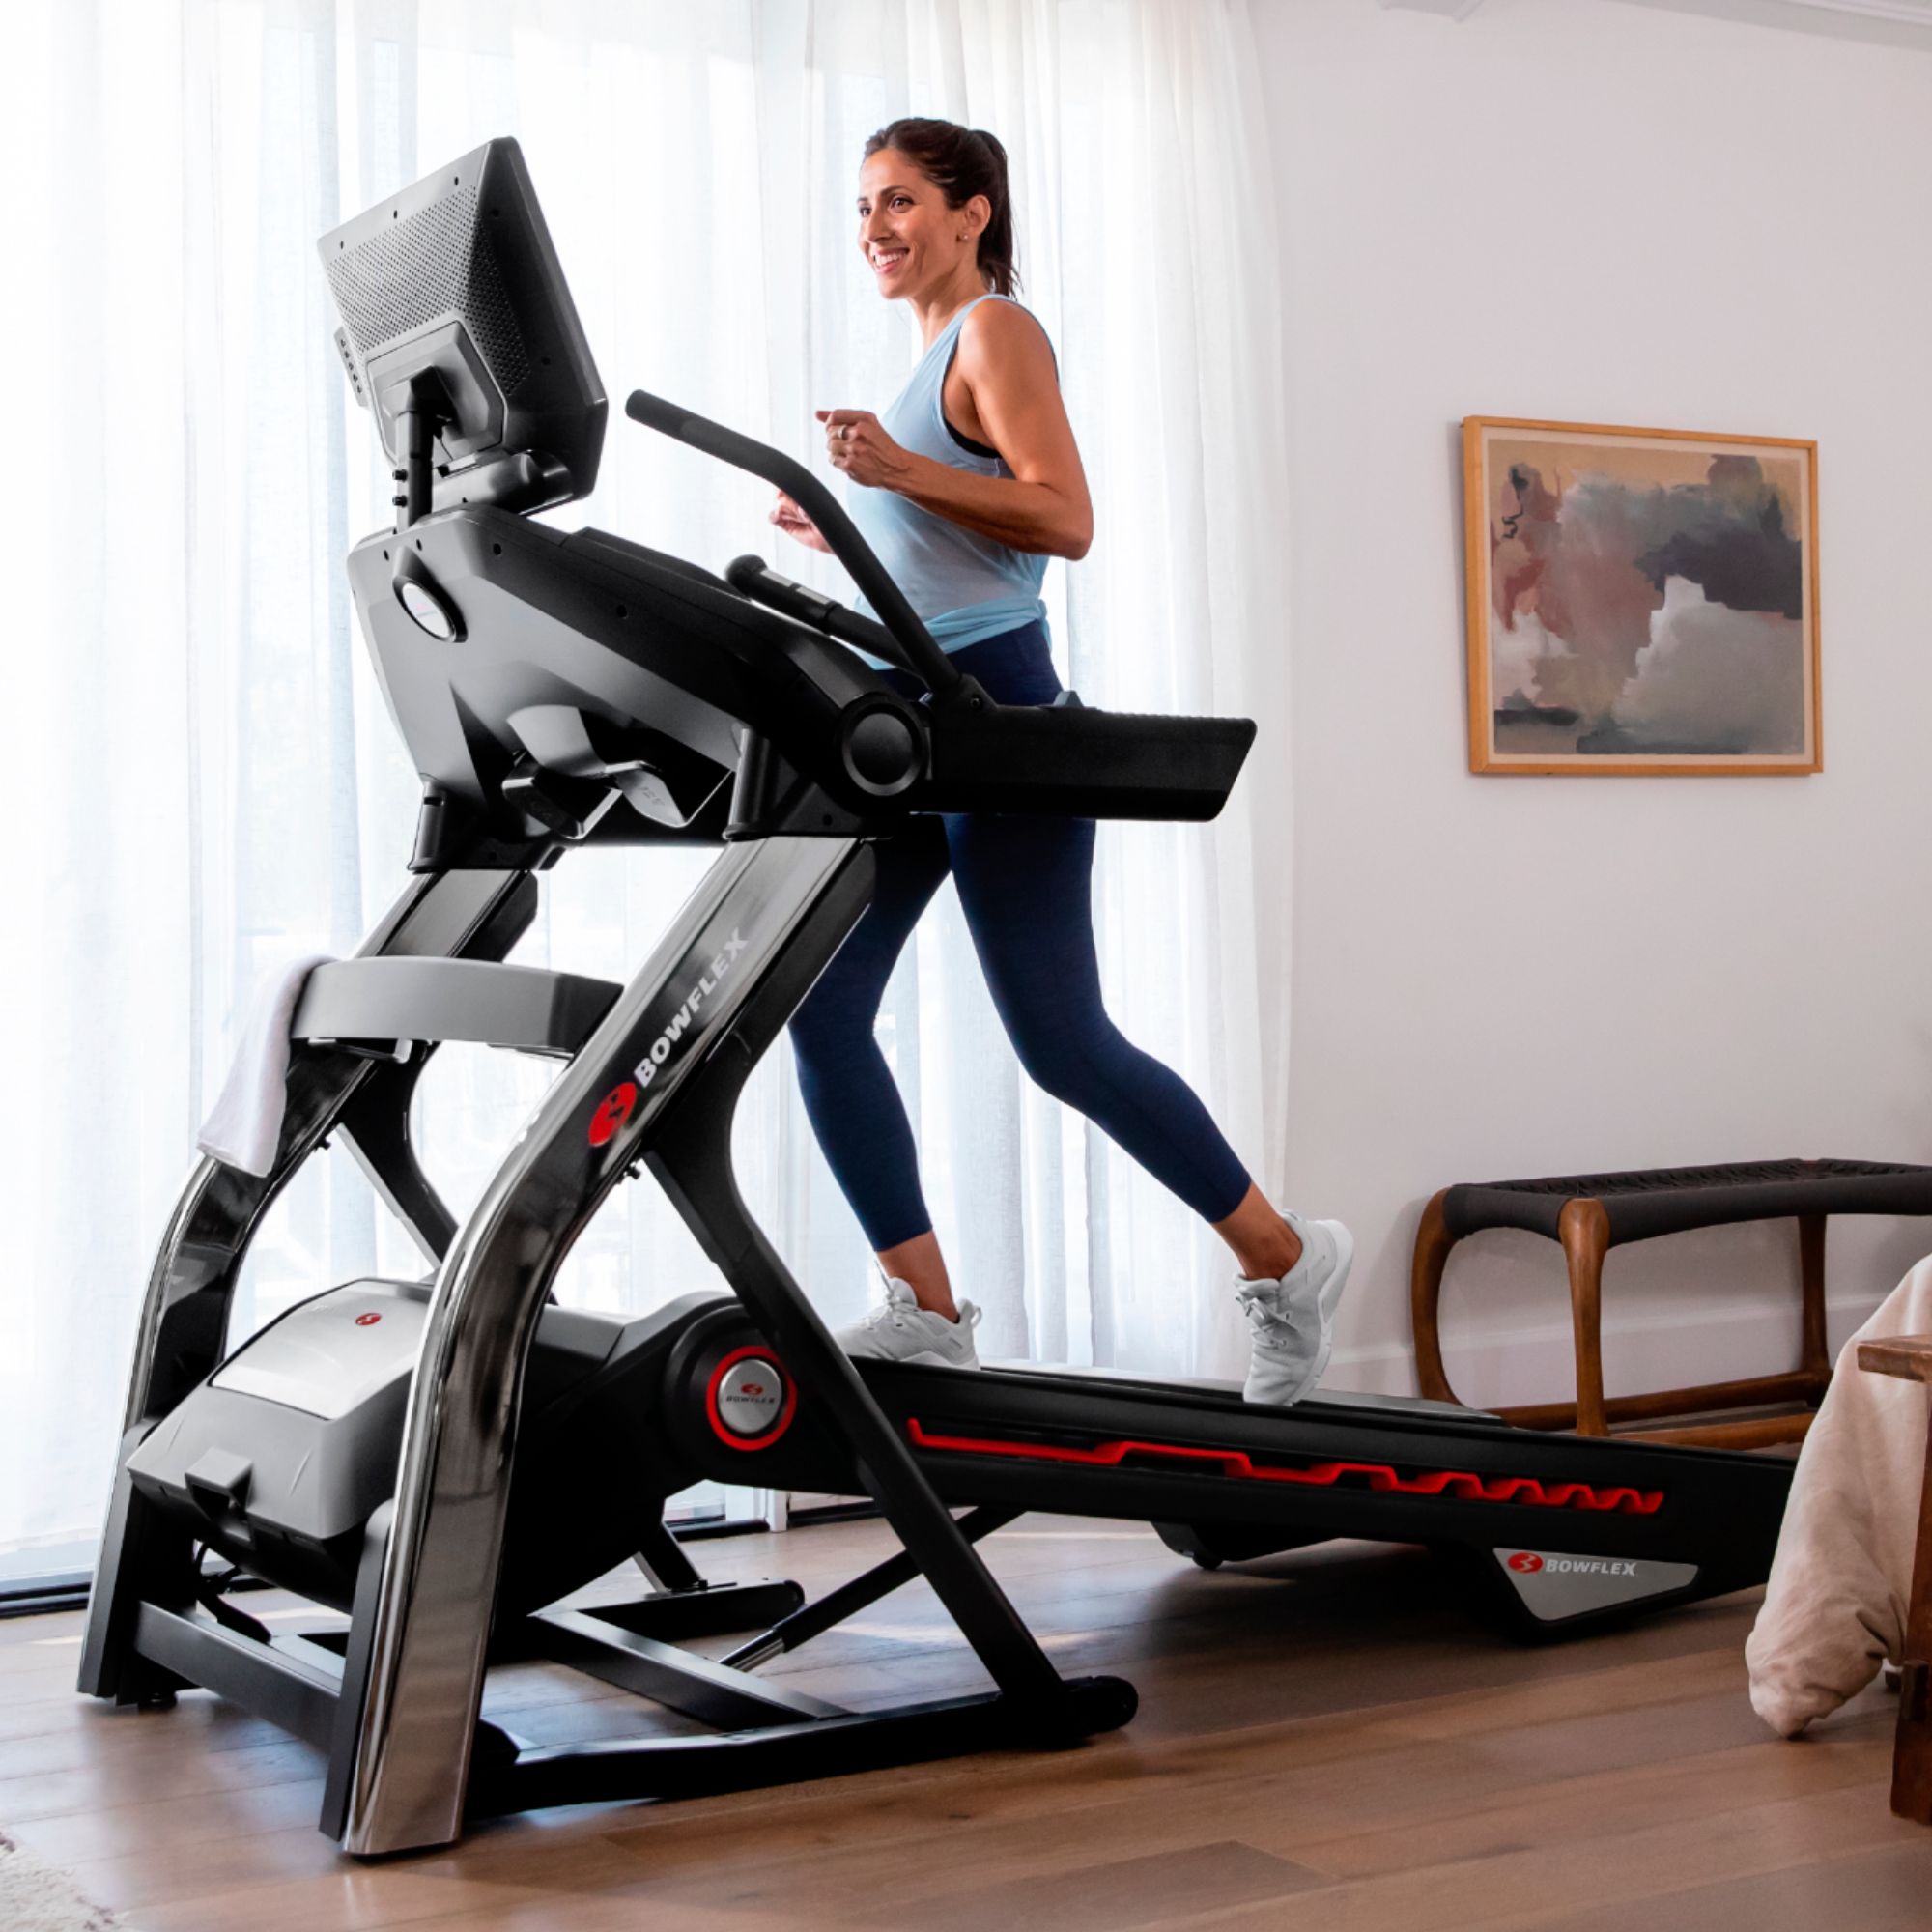 BowFlex Treadmill 10 Black 100909 - Best Buy